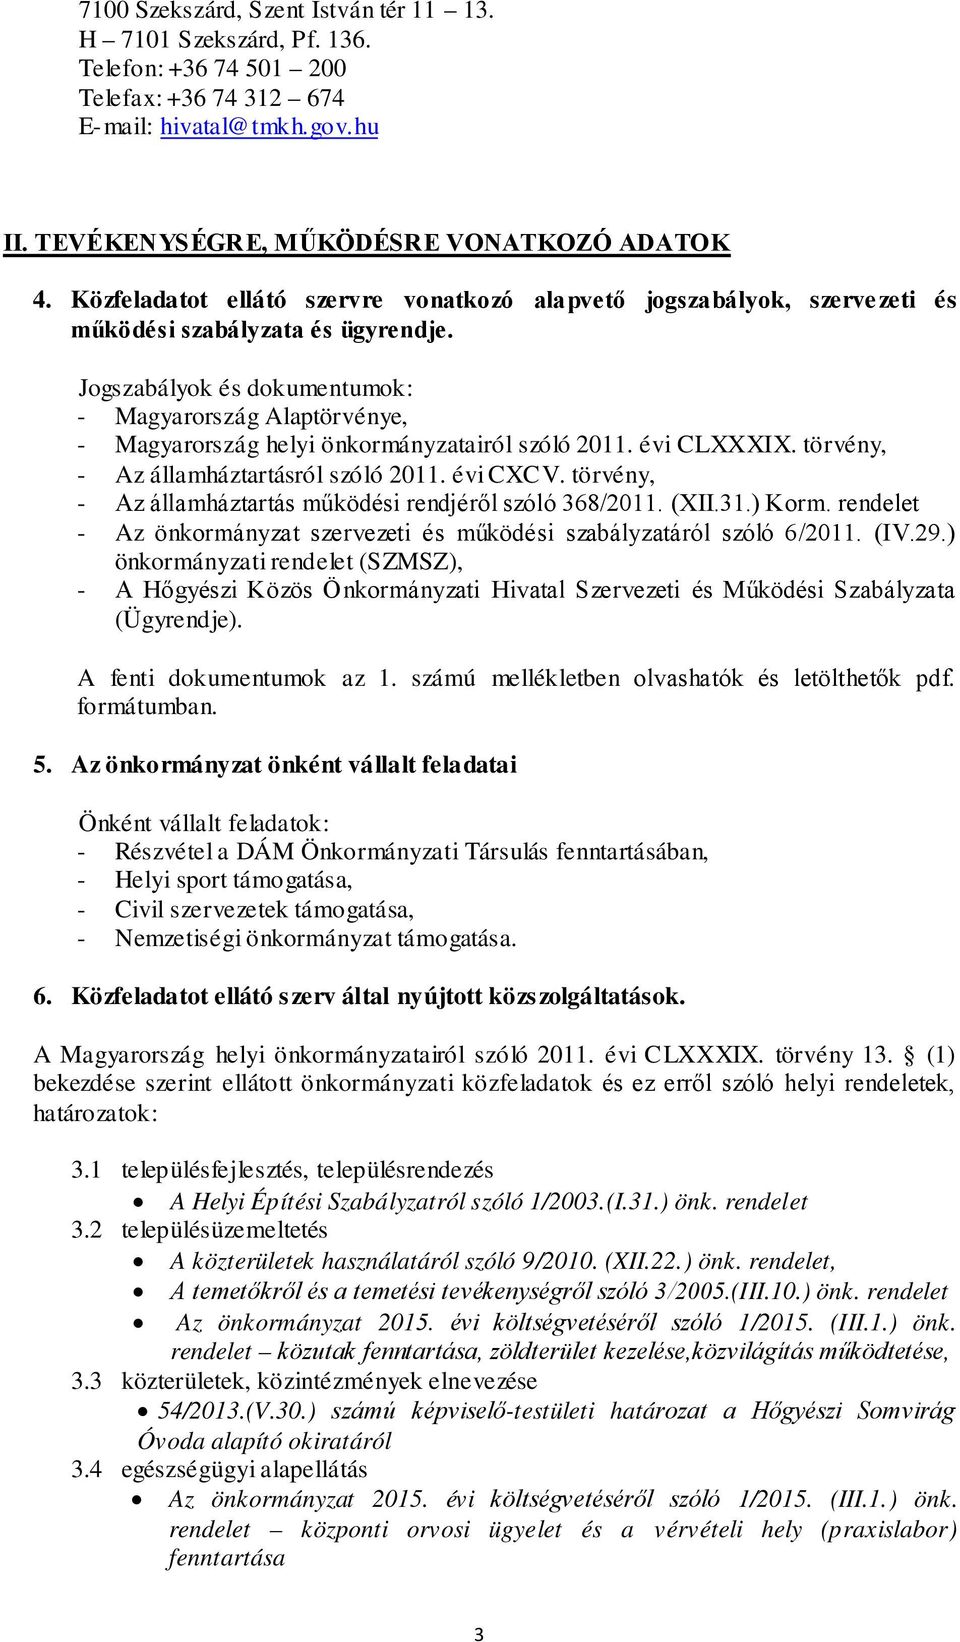 Jogszabályok és dokumentumok: - Magyarország Alaptörvénye, - Magyarország helyi önkormányzatairól szóló 2011. évi CLXXXIX. törvény, - Az államháztartásról szóló 2011. évi CXCV.